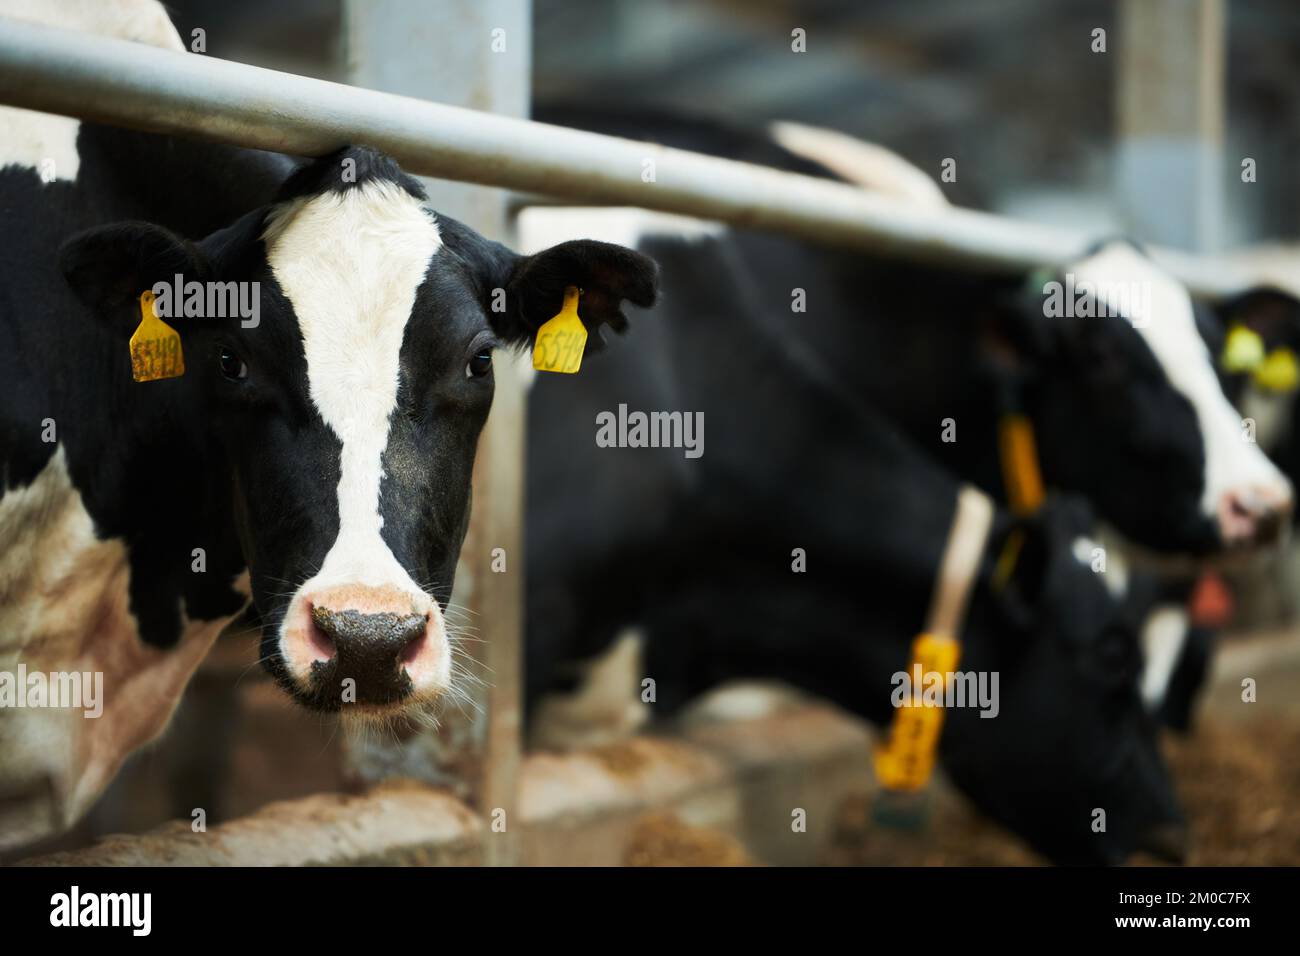 Eine schwarz-weiße reinrassige Milchkuh, die in die Kamera schaut, während sie im Stall steht, während andere Nutztiere Futter vom Futtermittel essen Stockfoto